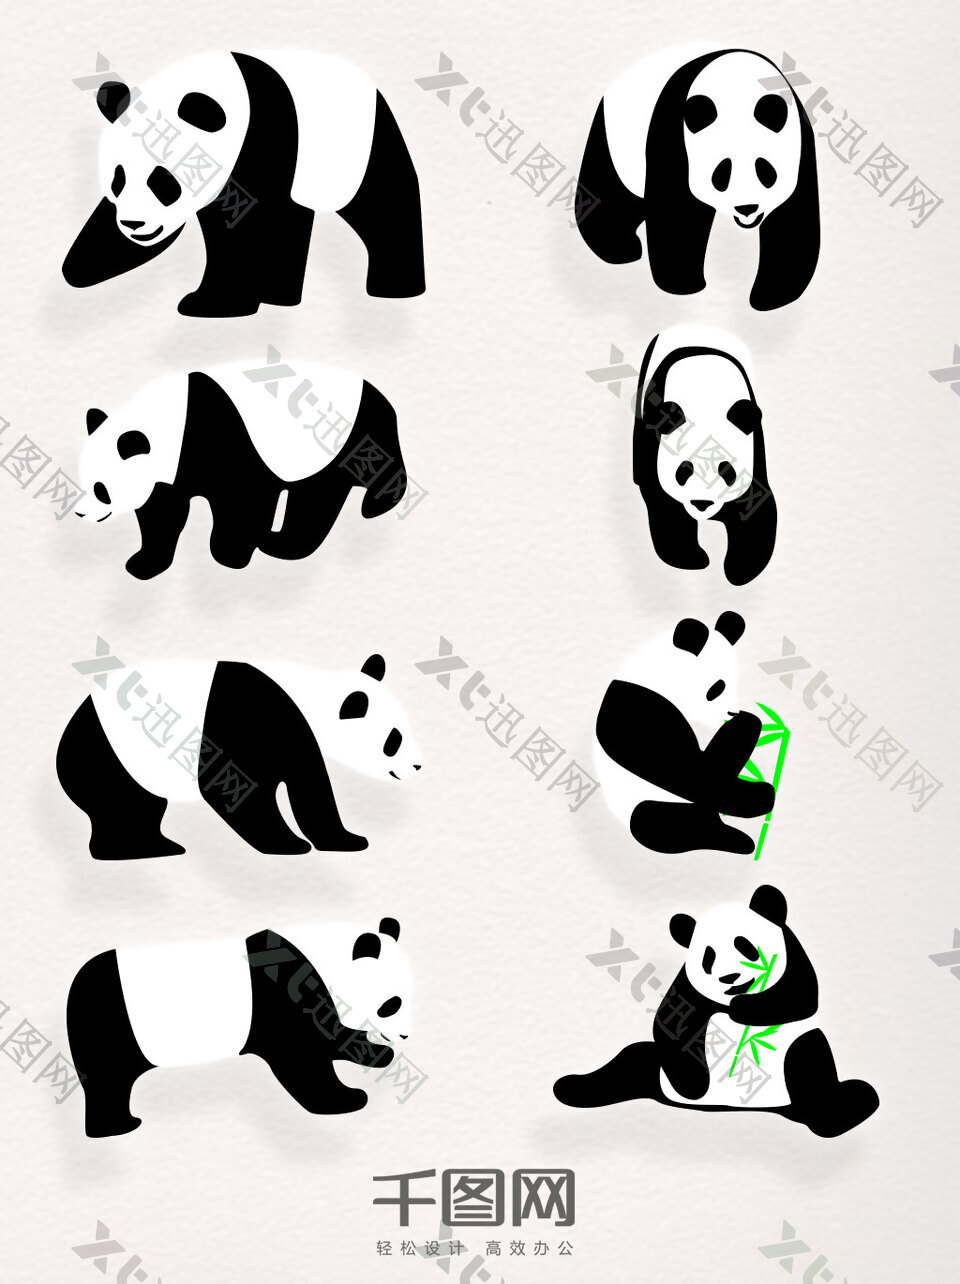 黑白矢量元素熊猫素材装饰图案集合